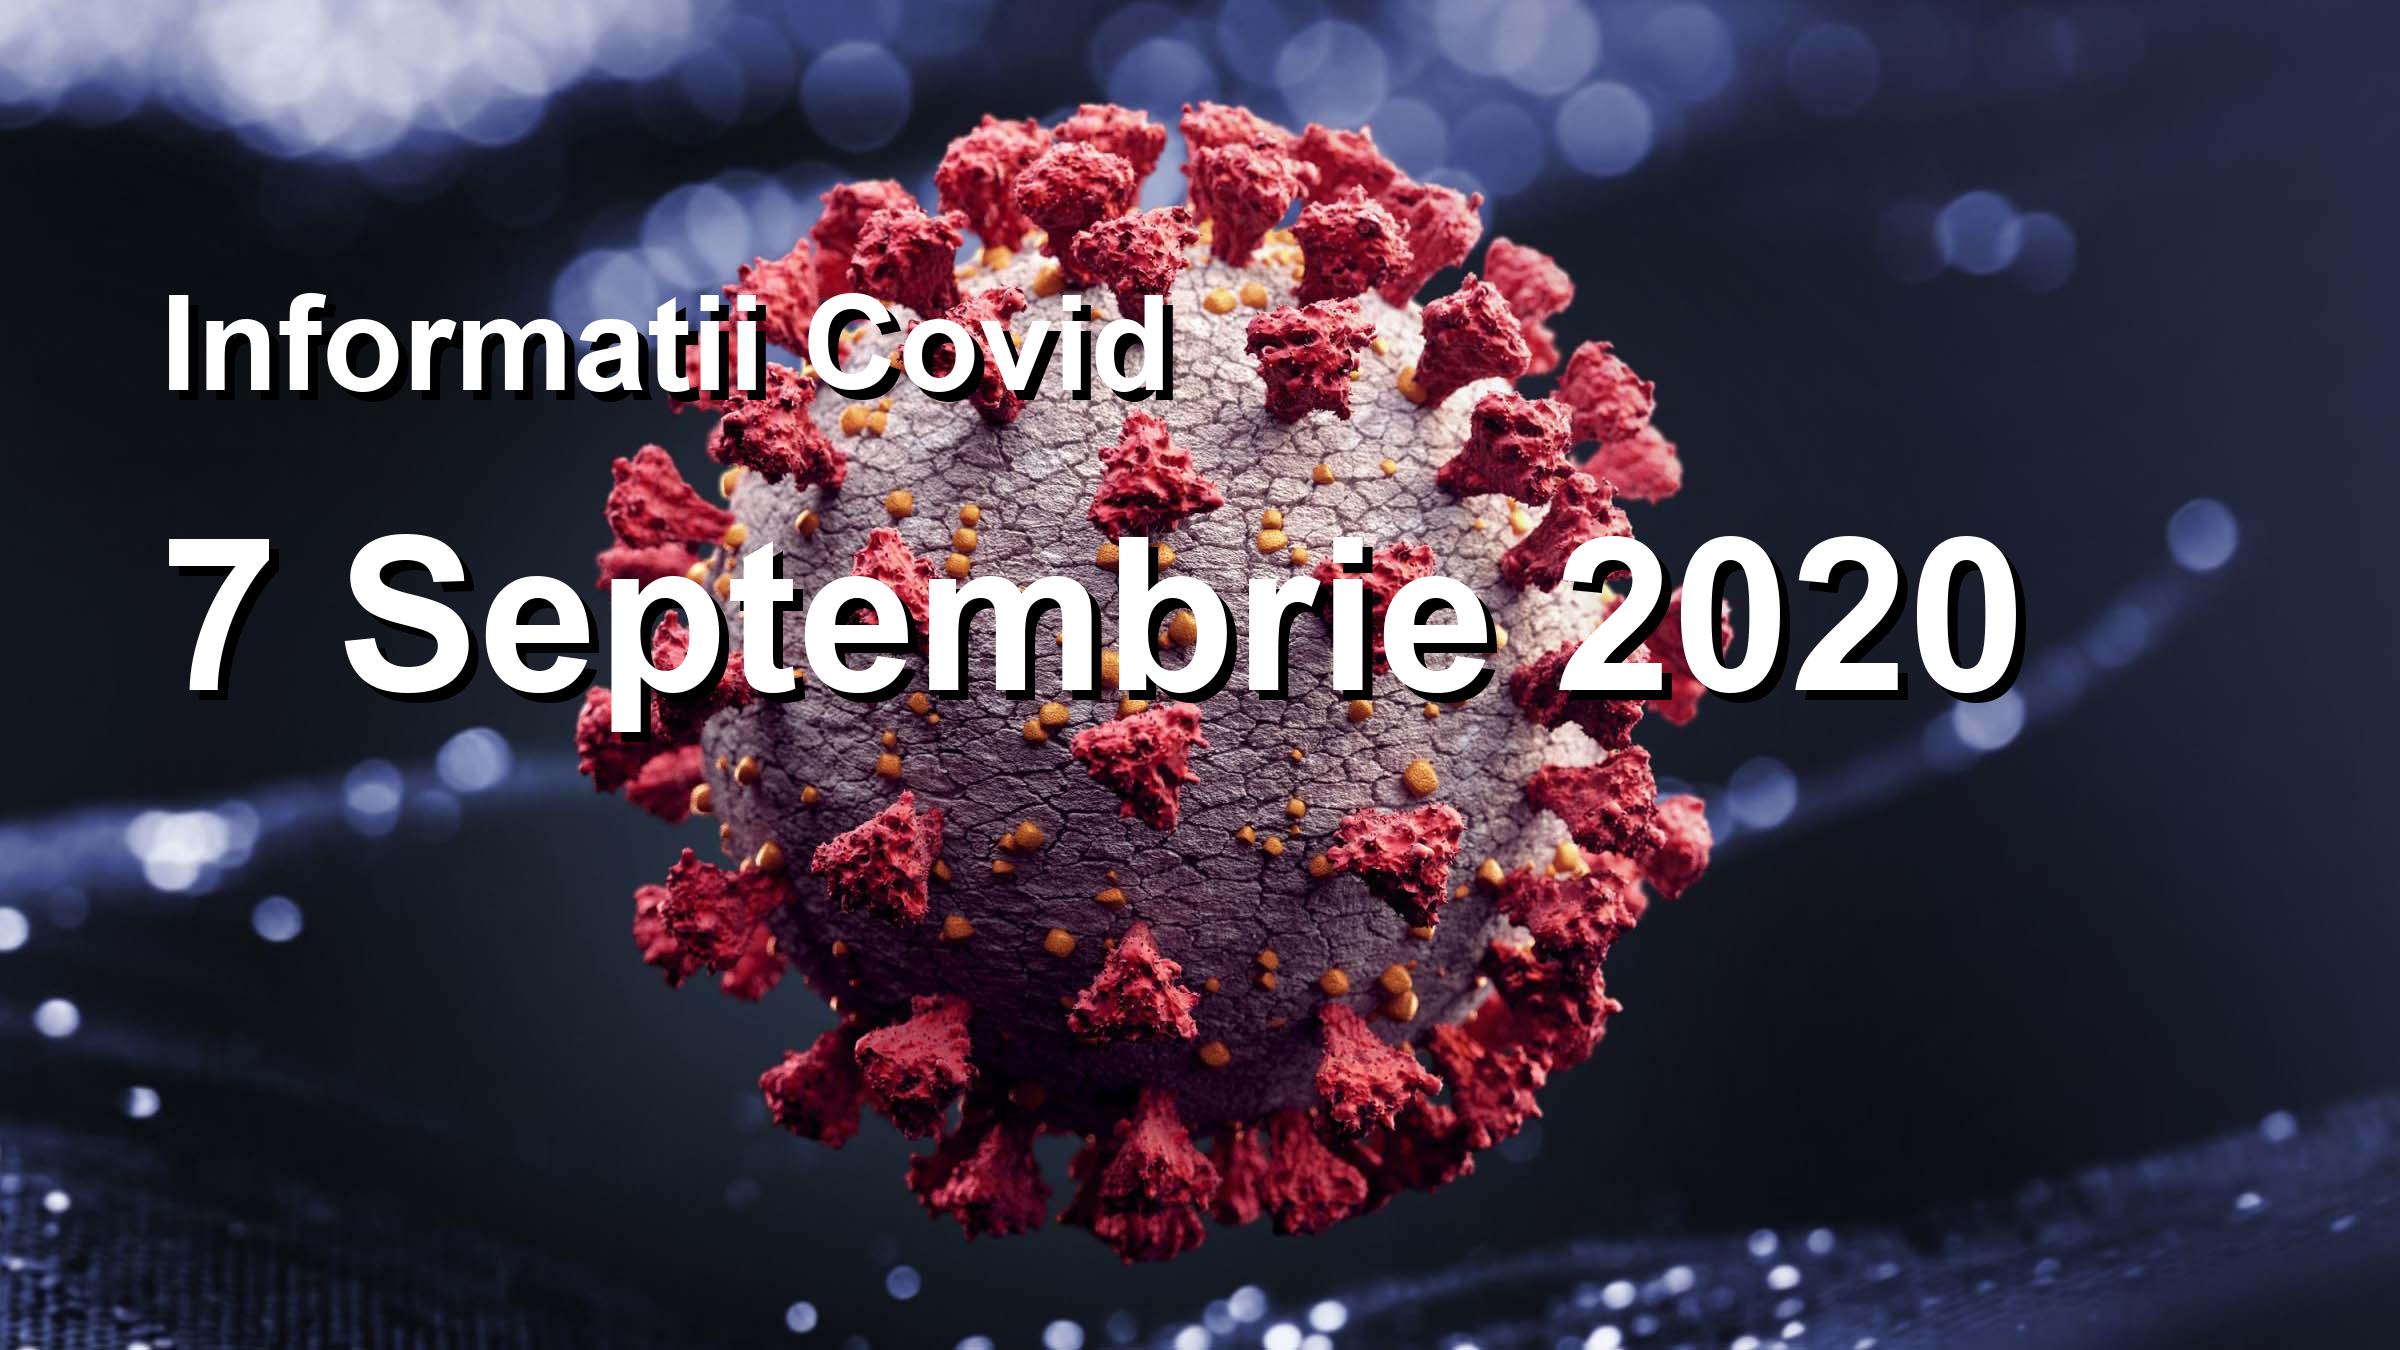 Informatii Covid-19 pentru 7 Septembrie 2020: 883 infectari, 7247 teste. | Coronavirus Romania